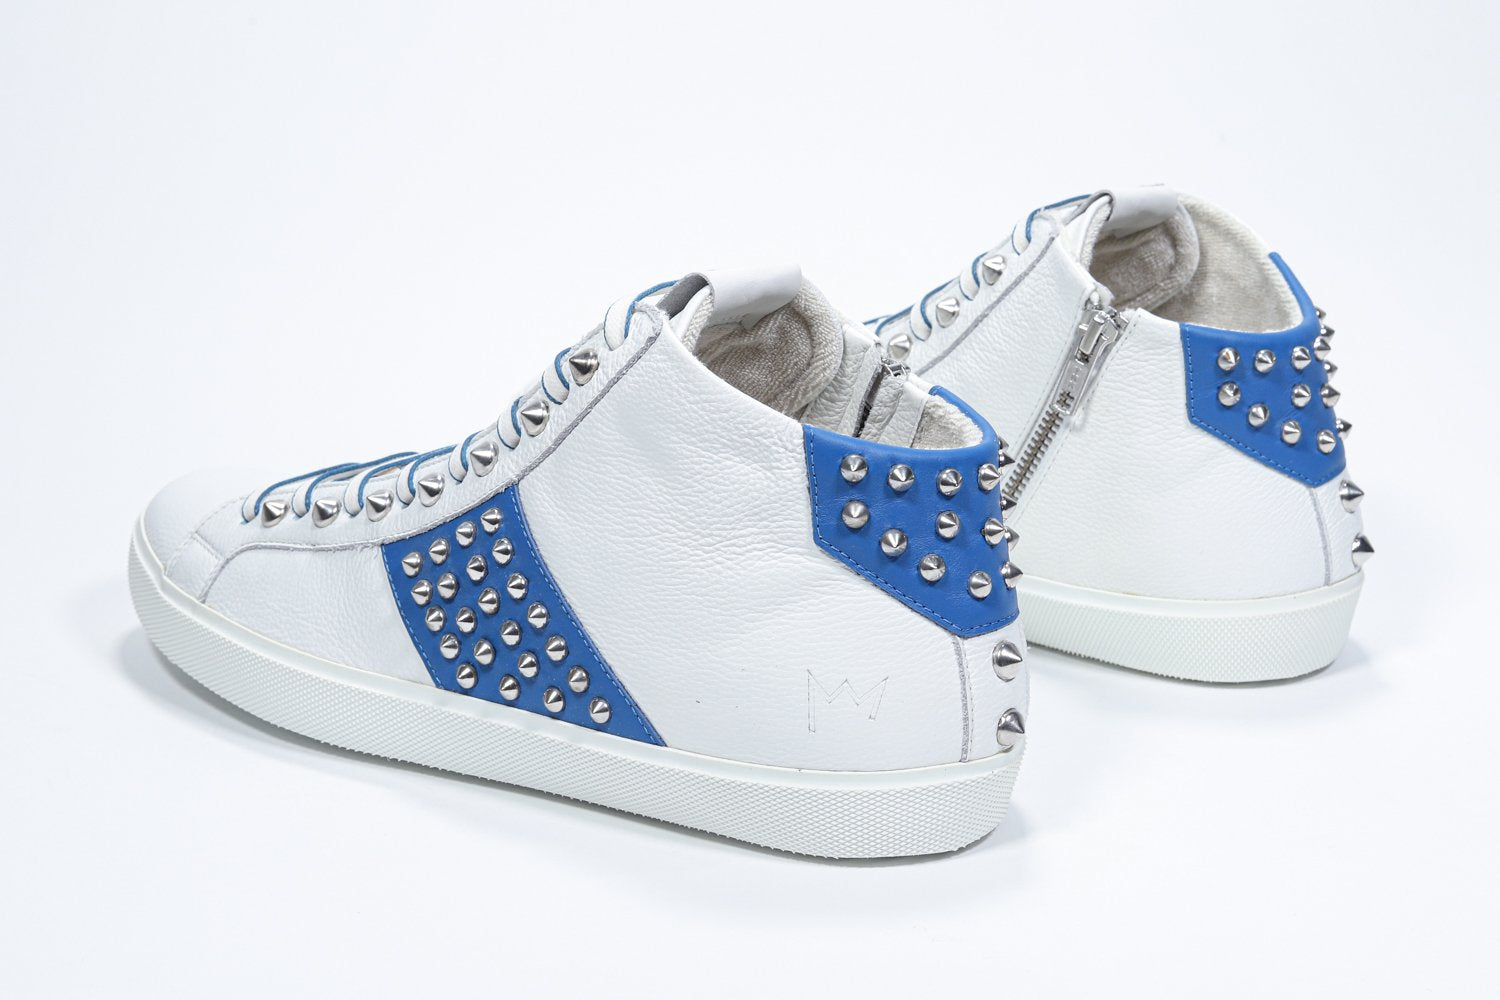 Dreiviertelansicht der Rückseite von Mid Top weiß und königsblau sneaker. Obermaterial aus Vollleder mit Nieten, einem internen Reißverschluss und weißer Gummisohle.